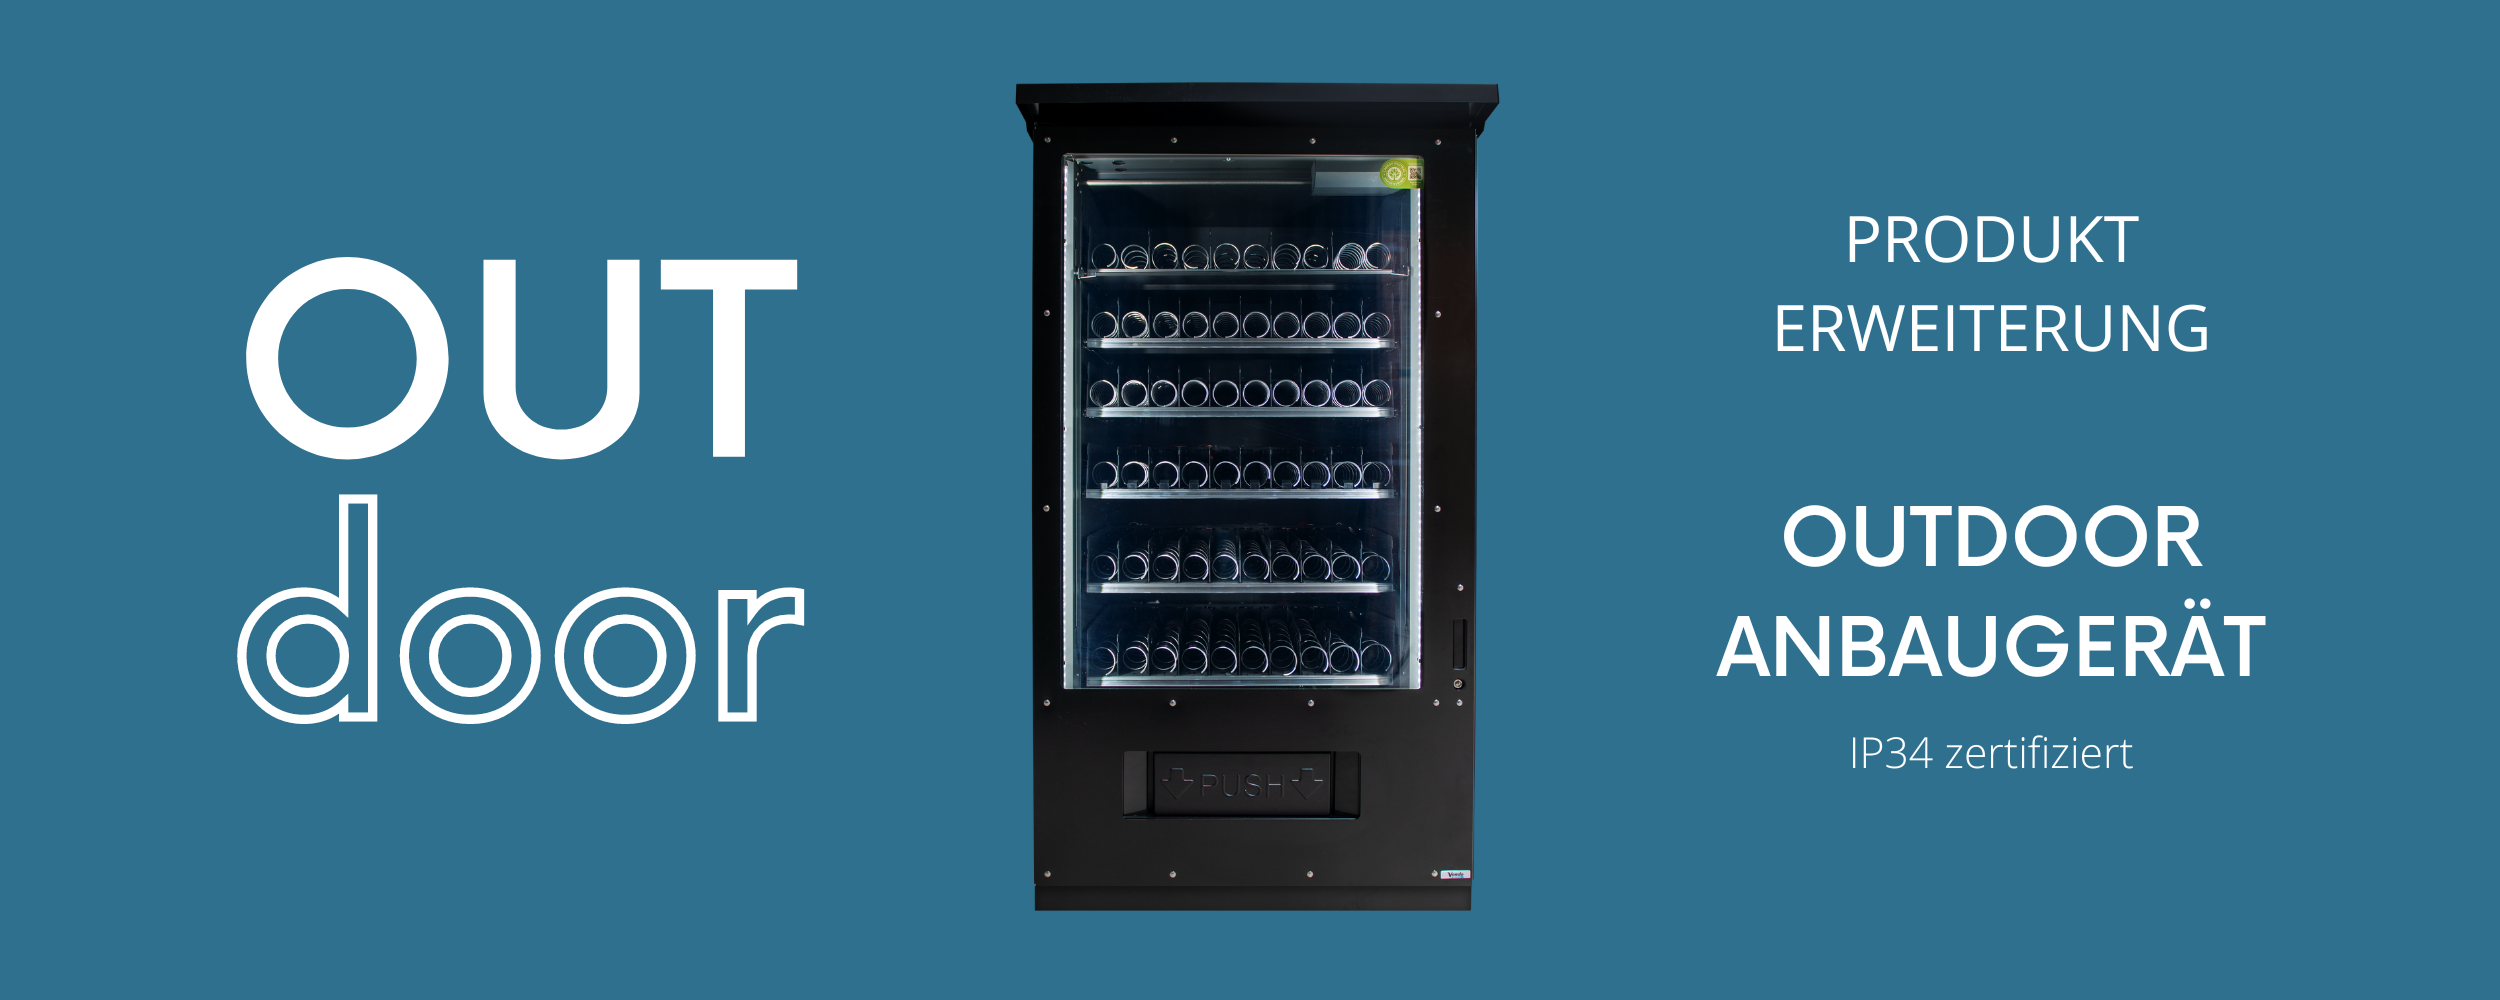 SandenVendo G-Drink - Der perfekte Getränkeautomat – Automatenland Shop